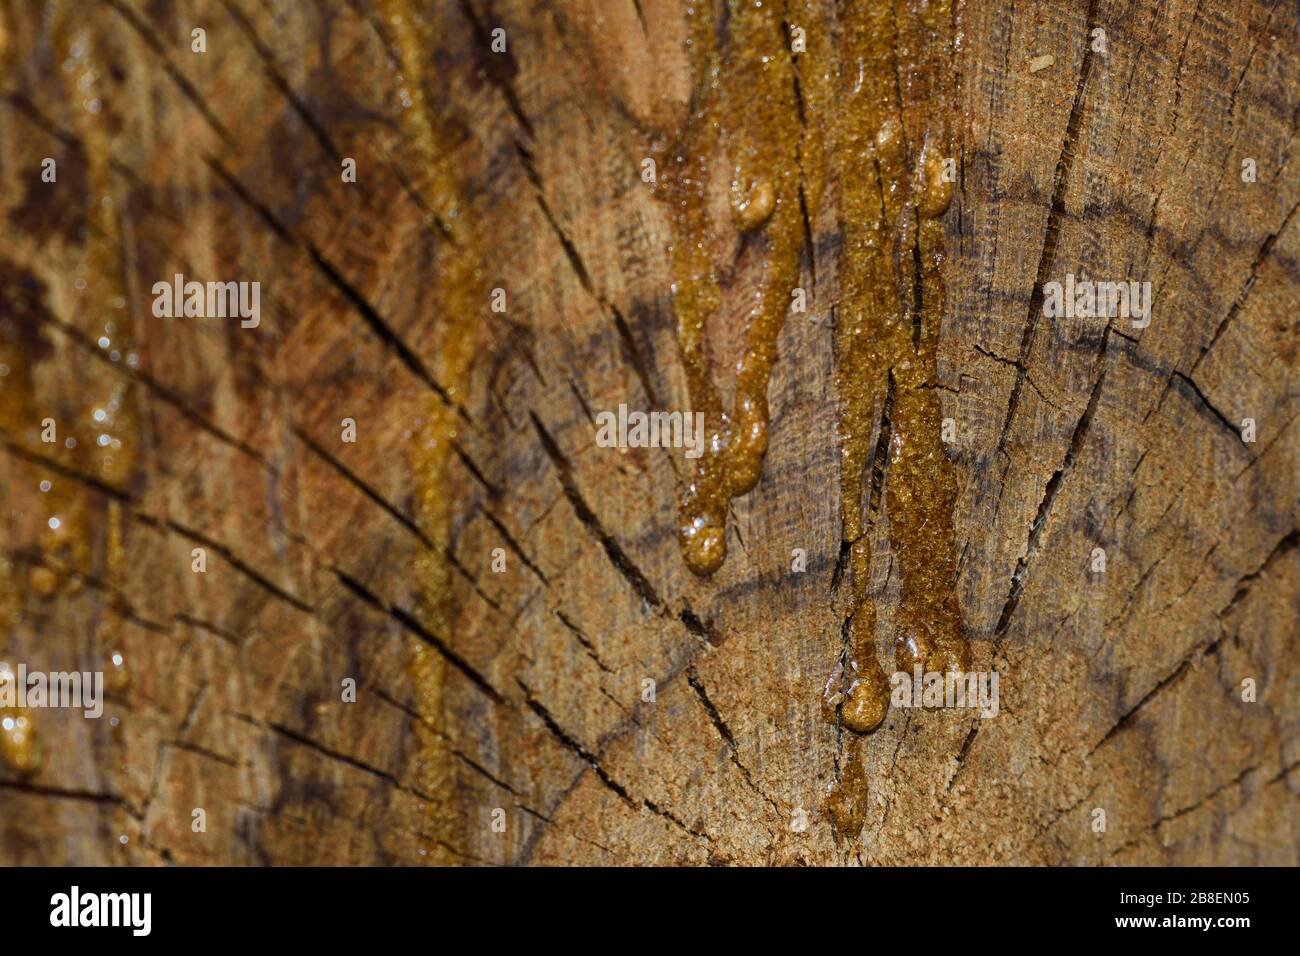 Hardened Wood Sap On Wooden Stump Crosscut (Vachellia sp.) Stock Photo